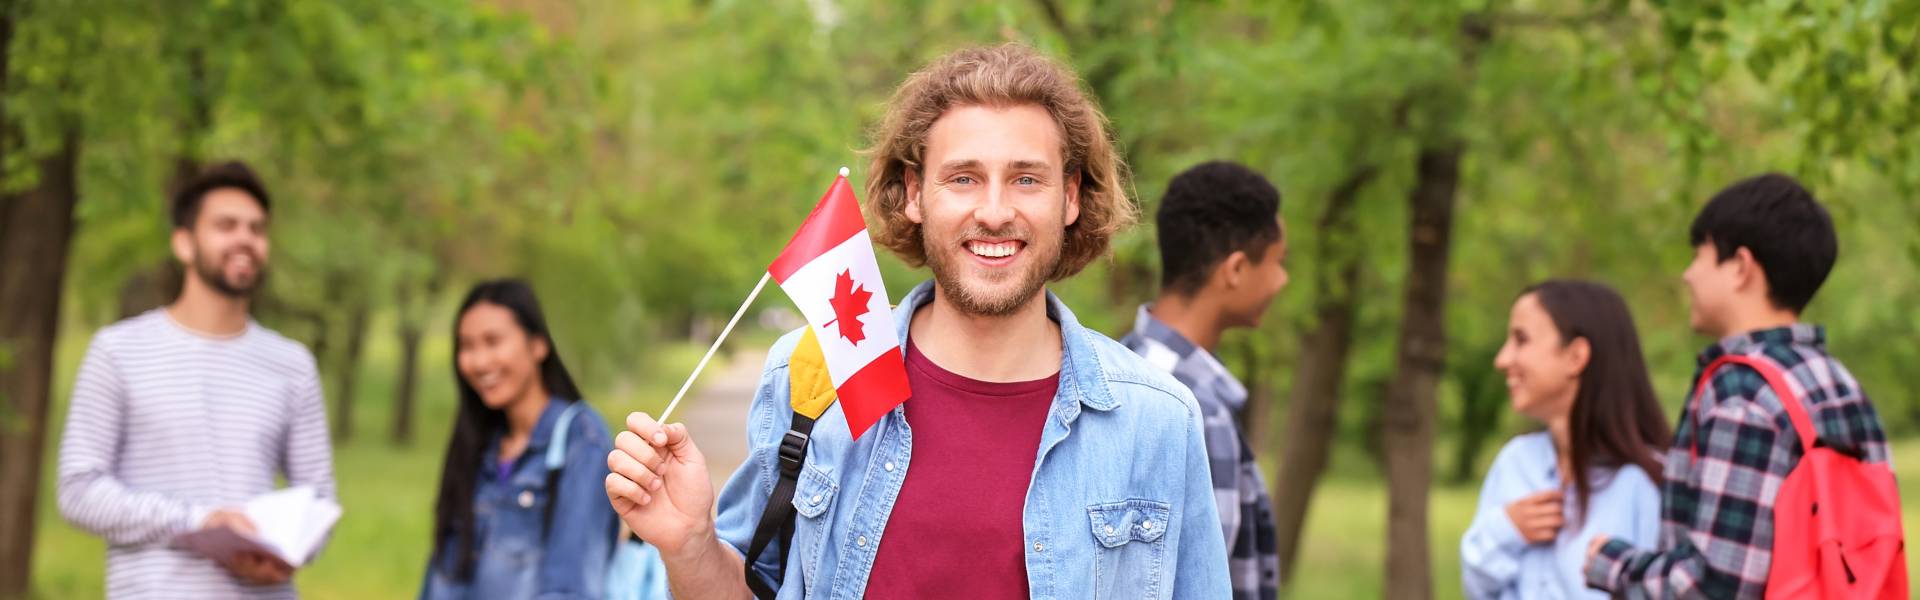 Las mejores escuelas de inglés para estudiar en Canadá